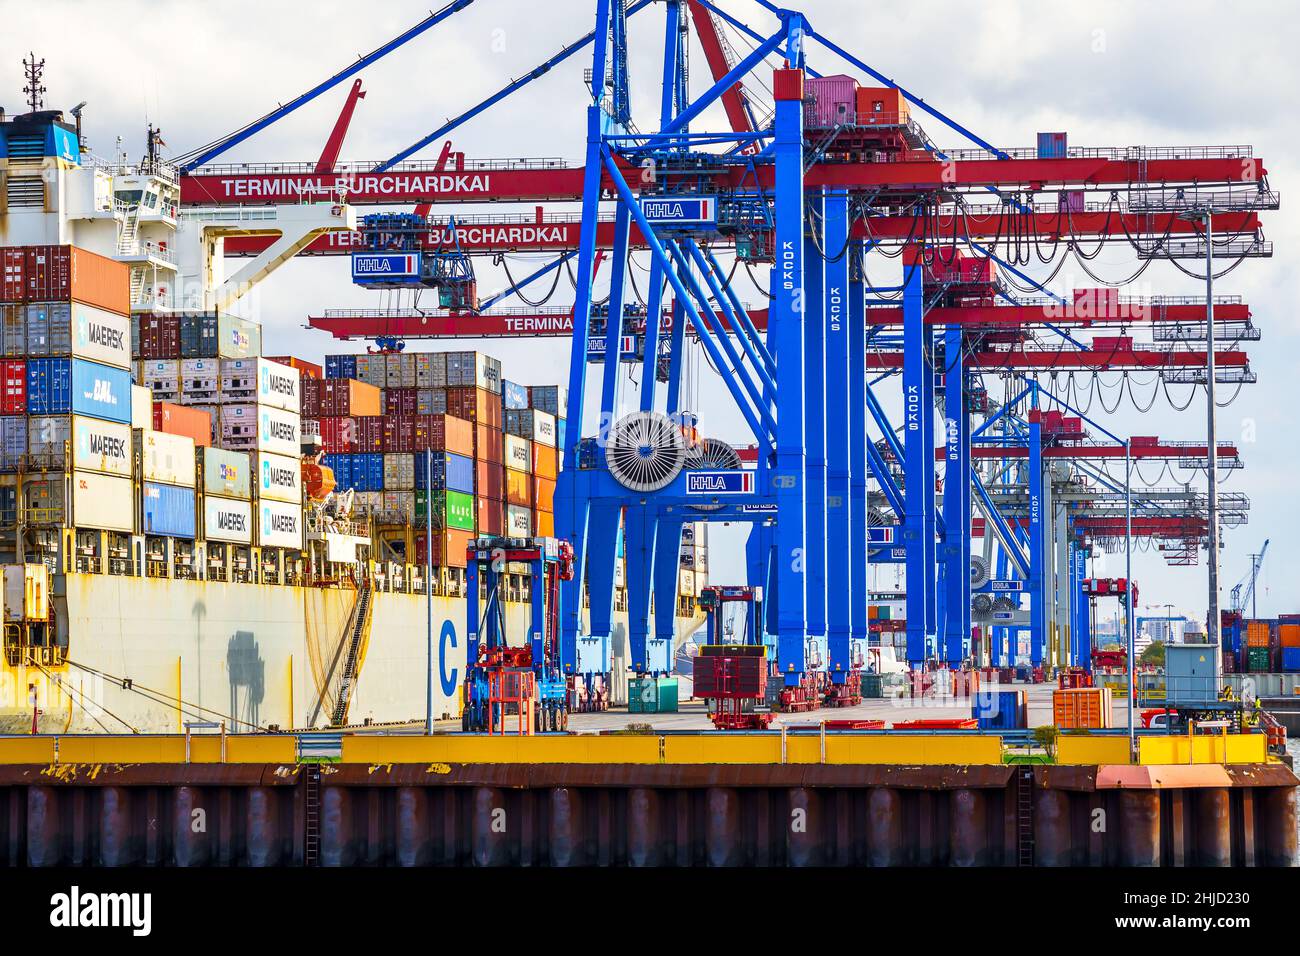 Ein Containerschiff wird über im Hamburger Hafen geladen; mit blau-roten Containerbrücken werden die Container an die richtige Position bugsiert Stockfoto